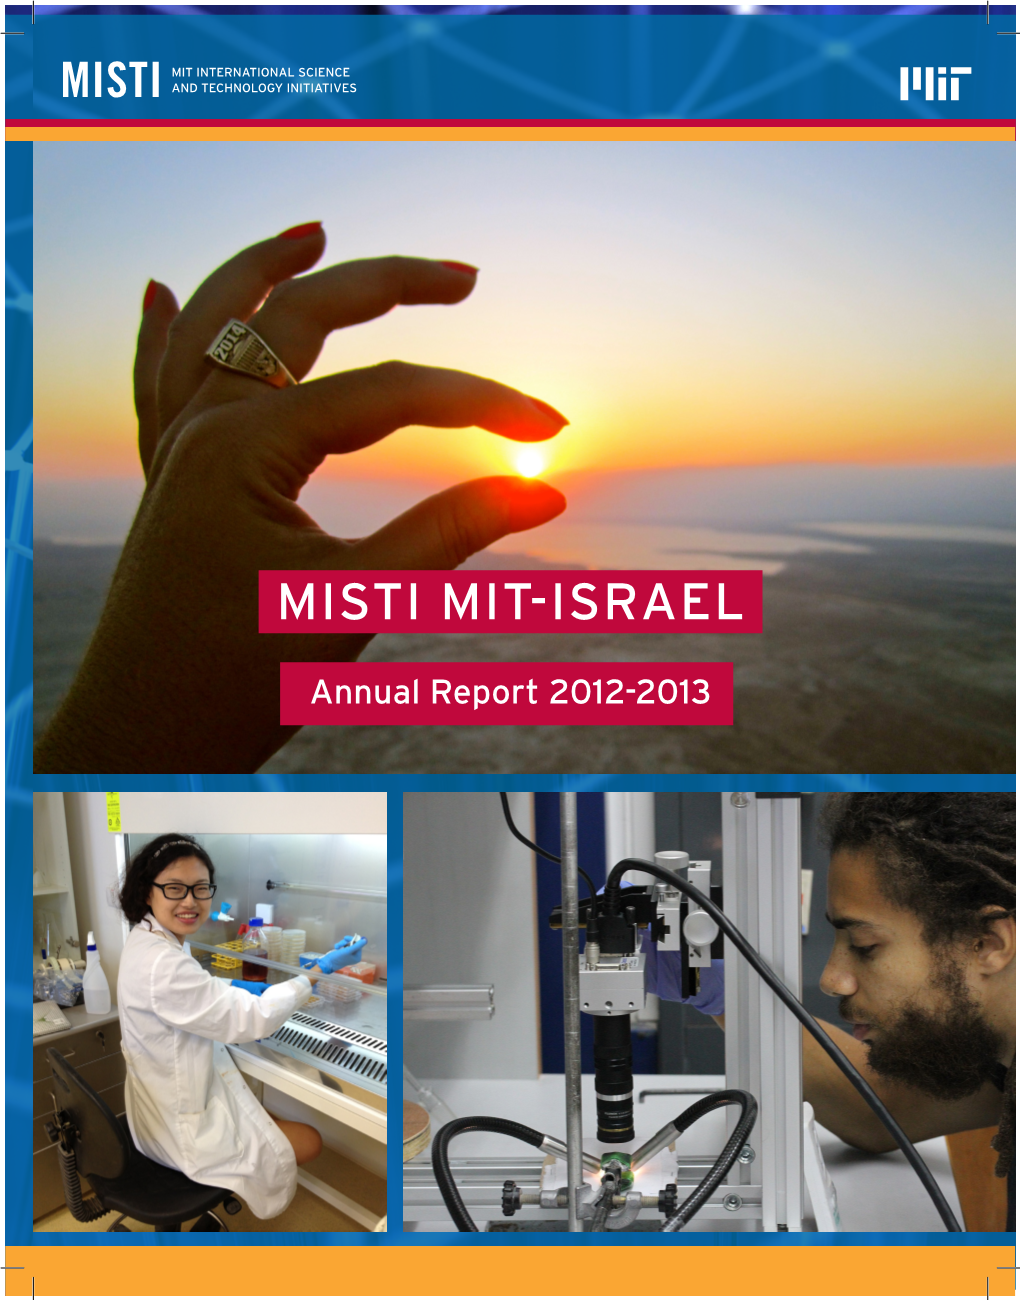 Misti Mit-Israel